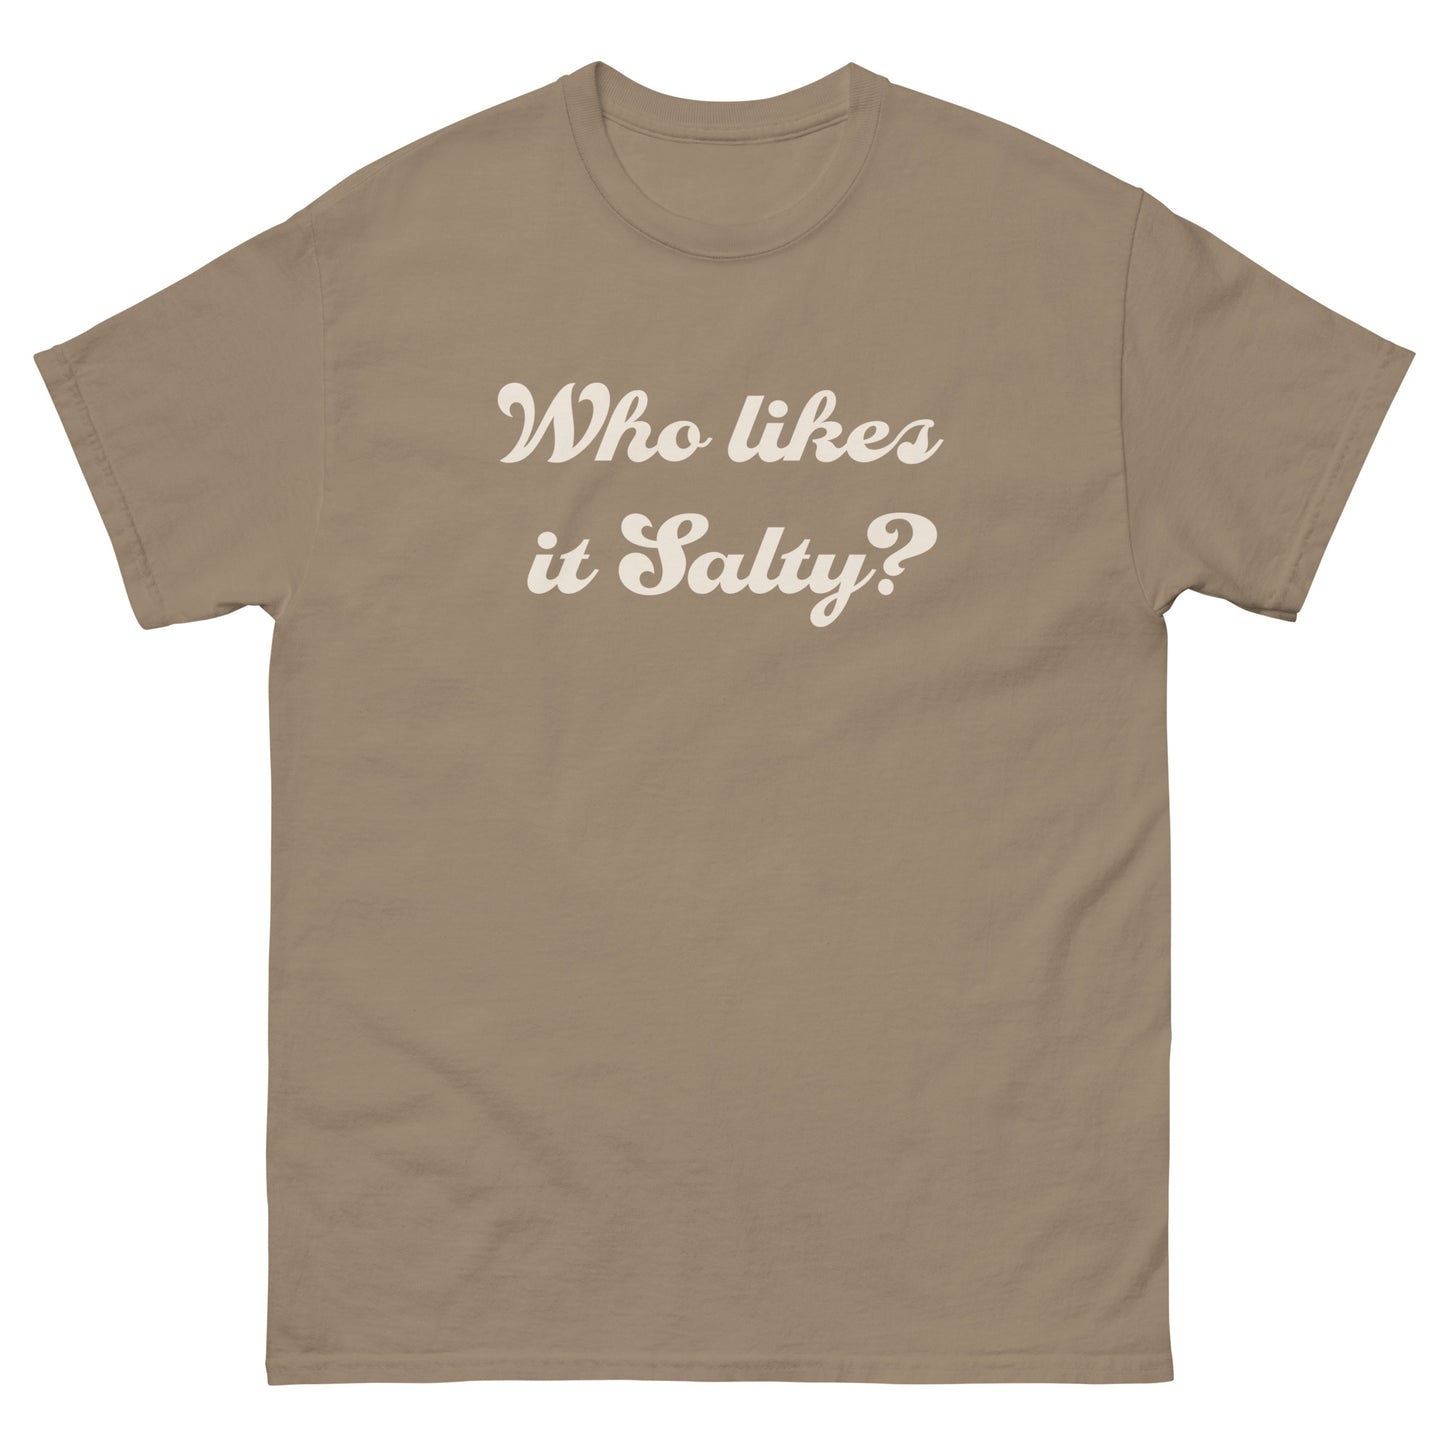 #WhoLikesItSalty - Structured Unisex Cotton T-shirt